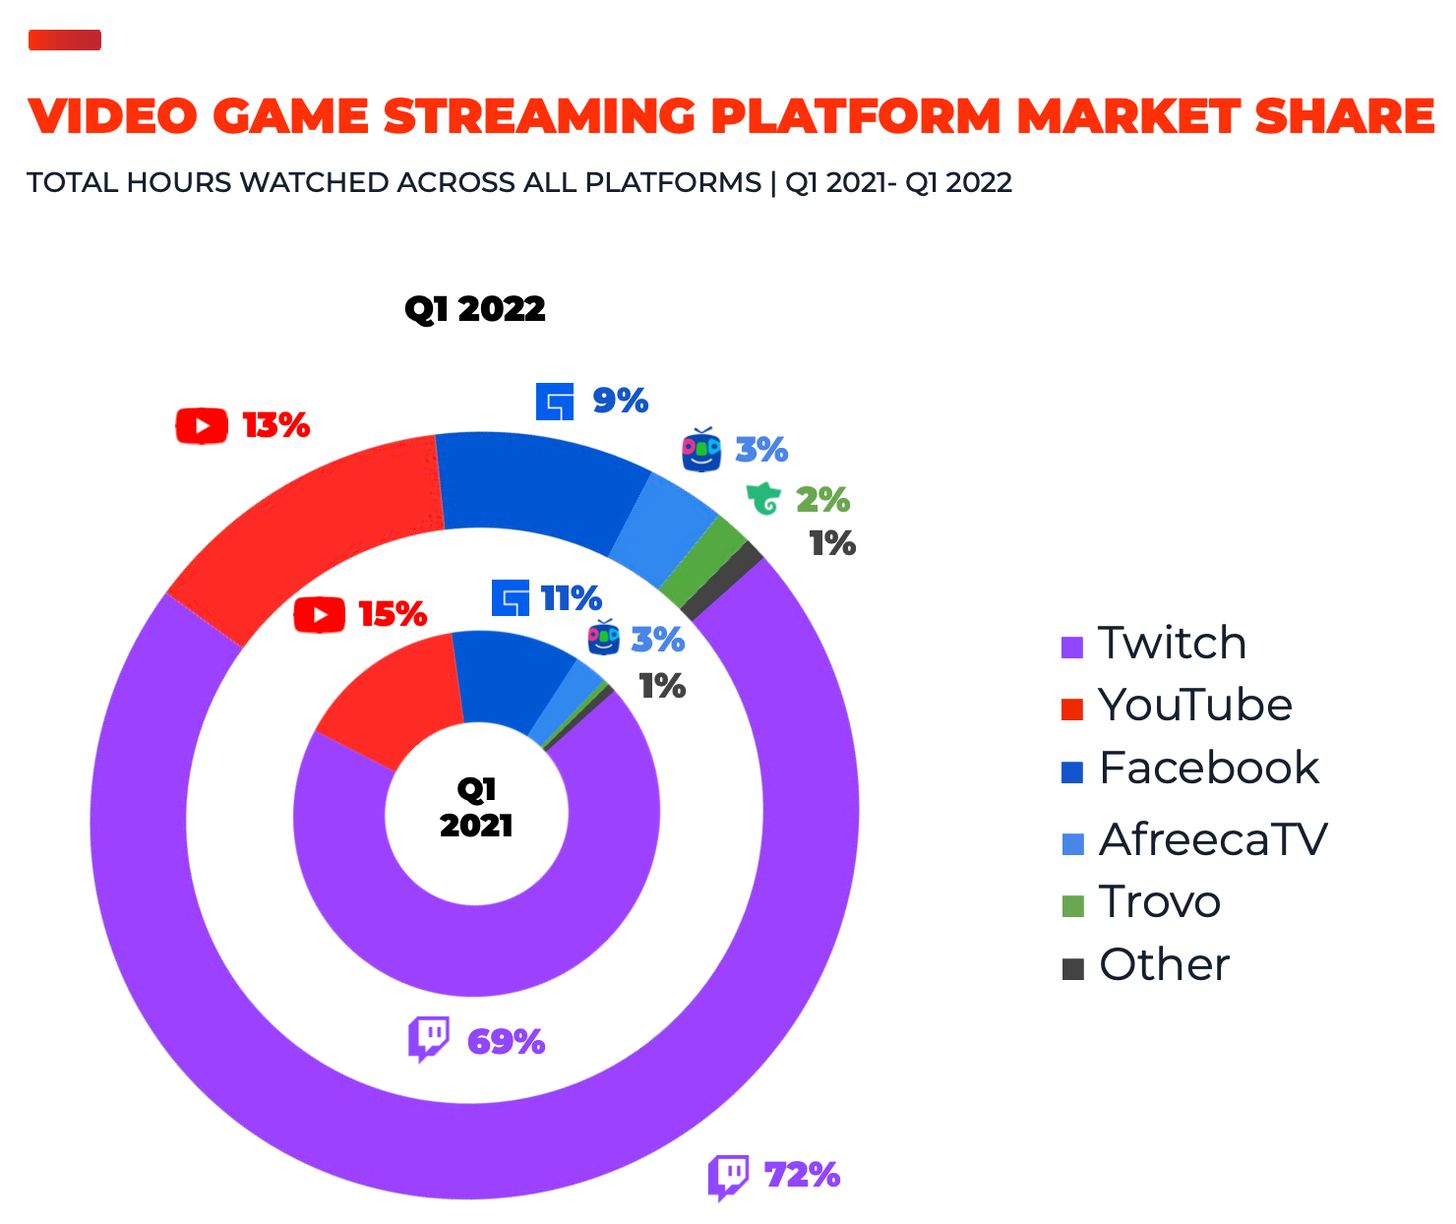 Video game streaming platforms